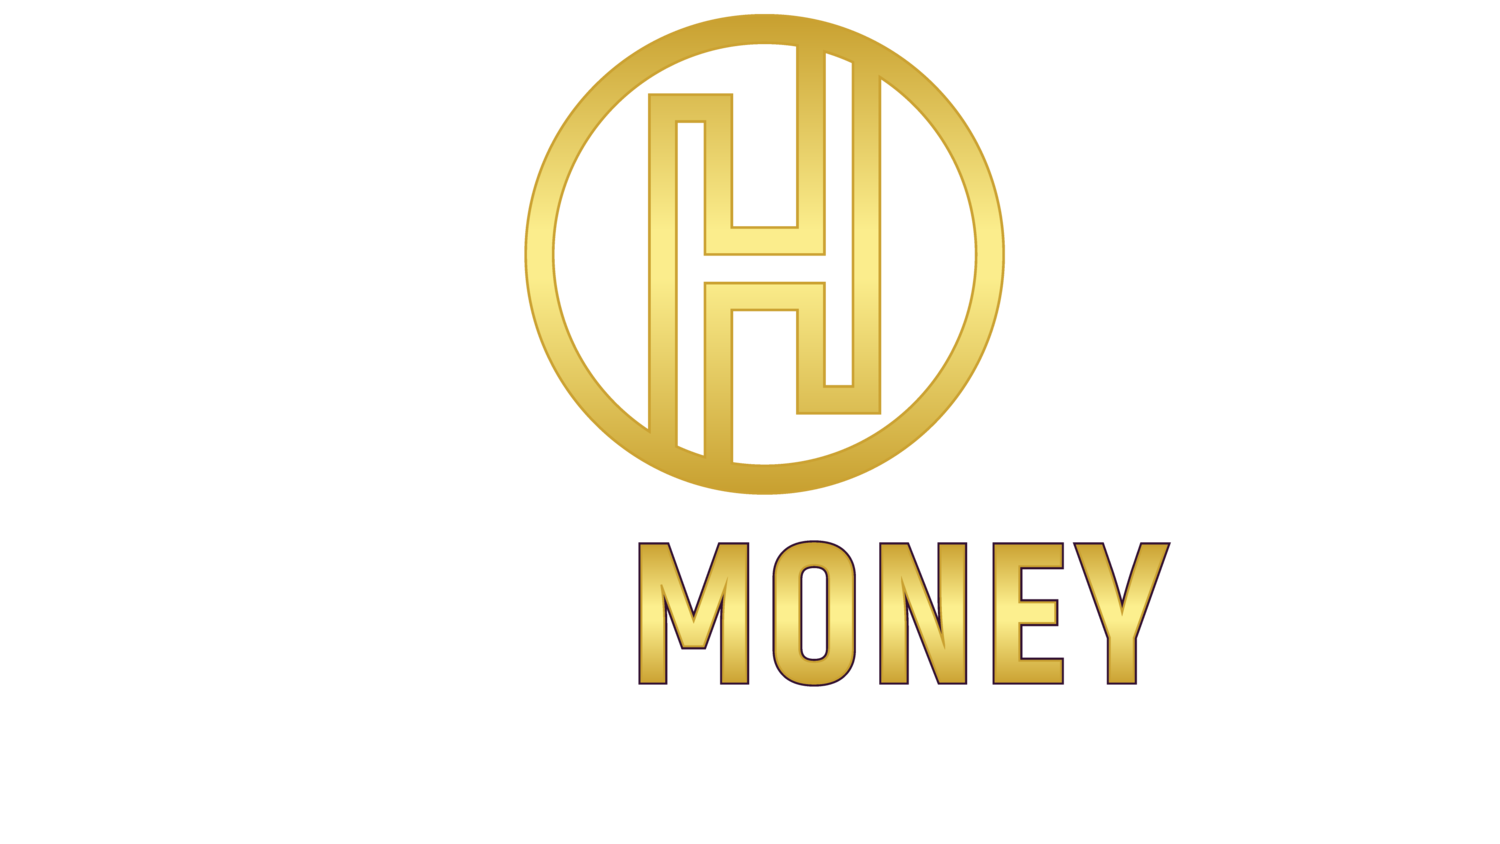 Harmoney Wealth, PLLC